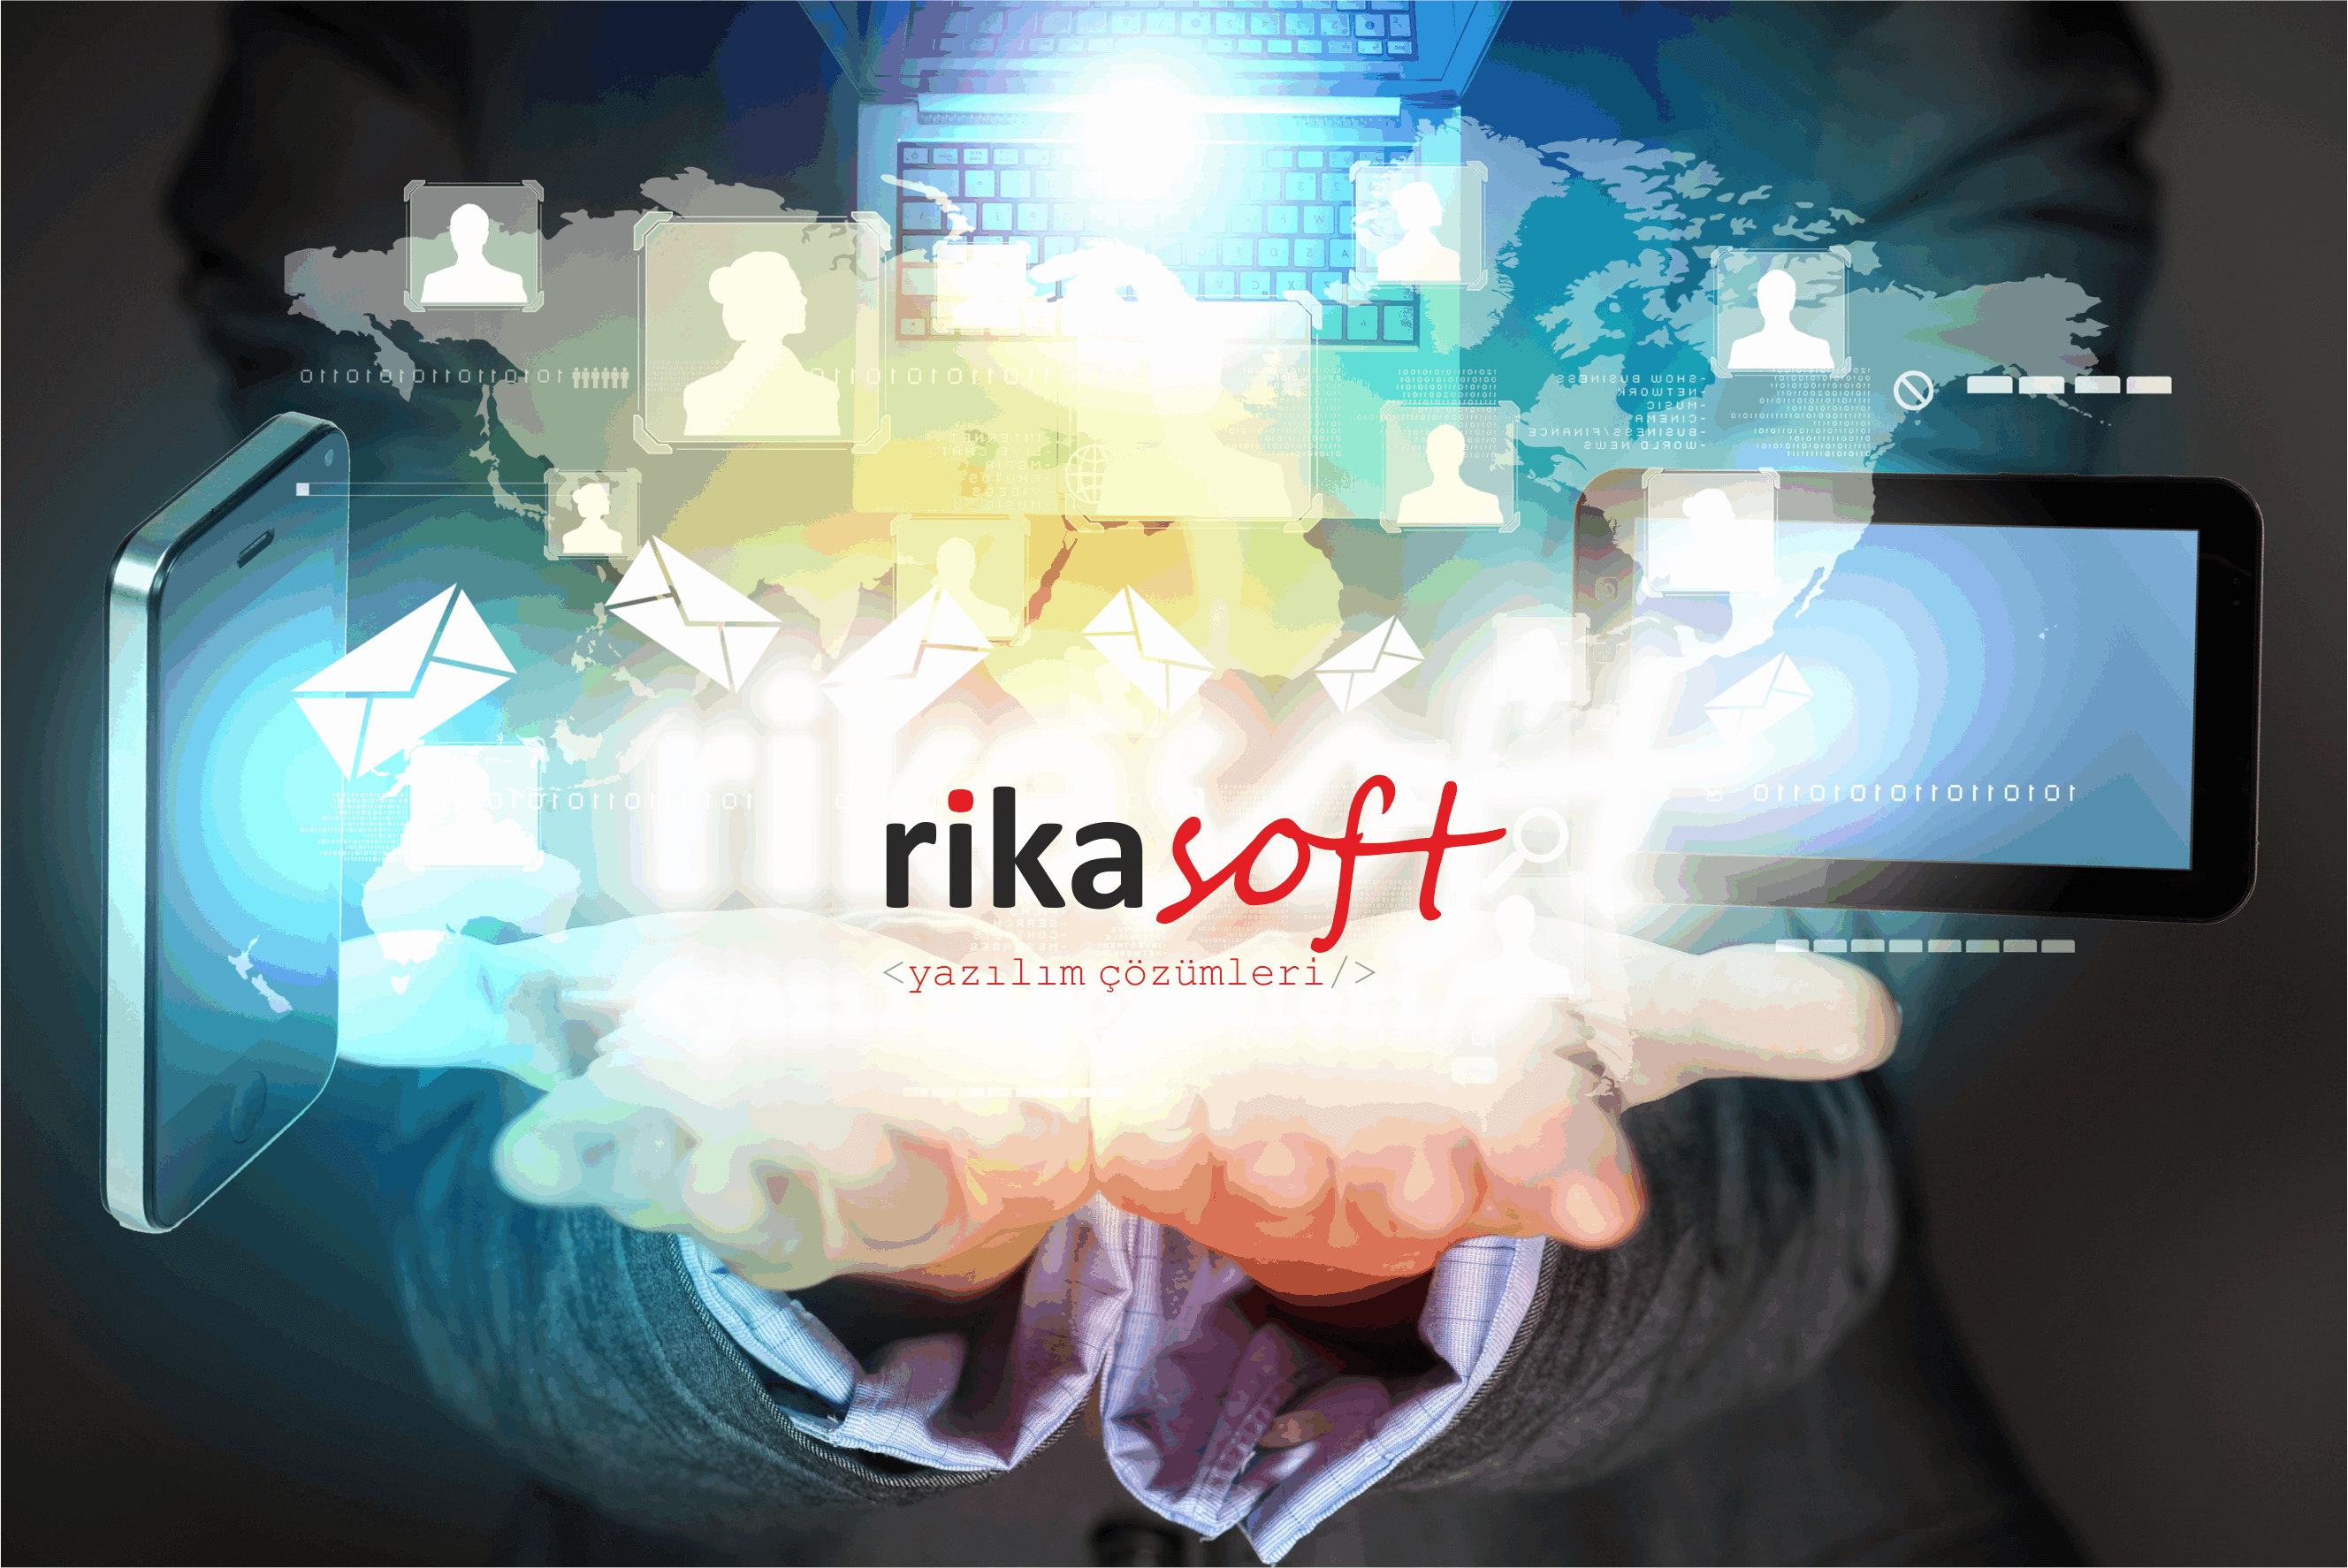 Kıbrıs RikaSoft Yazılım Çözümleri Hakkında